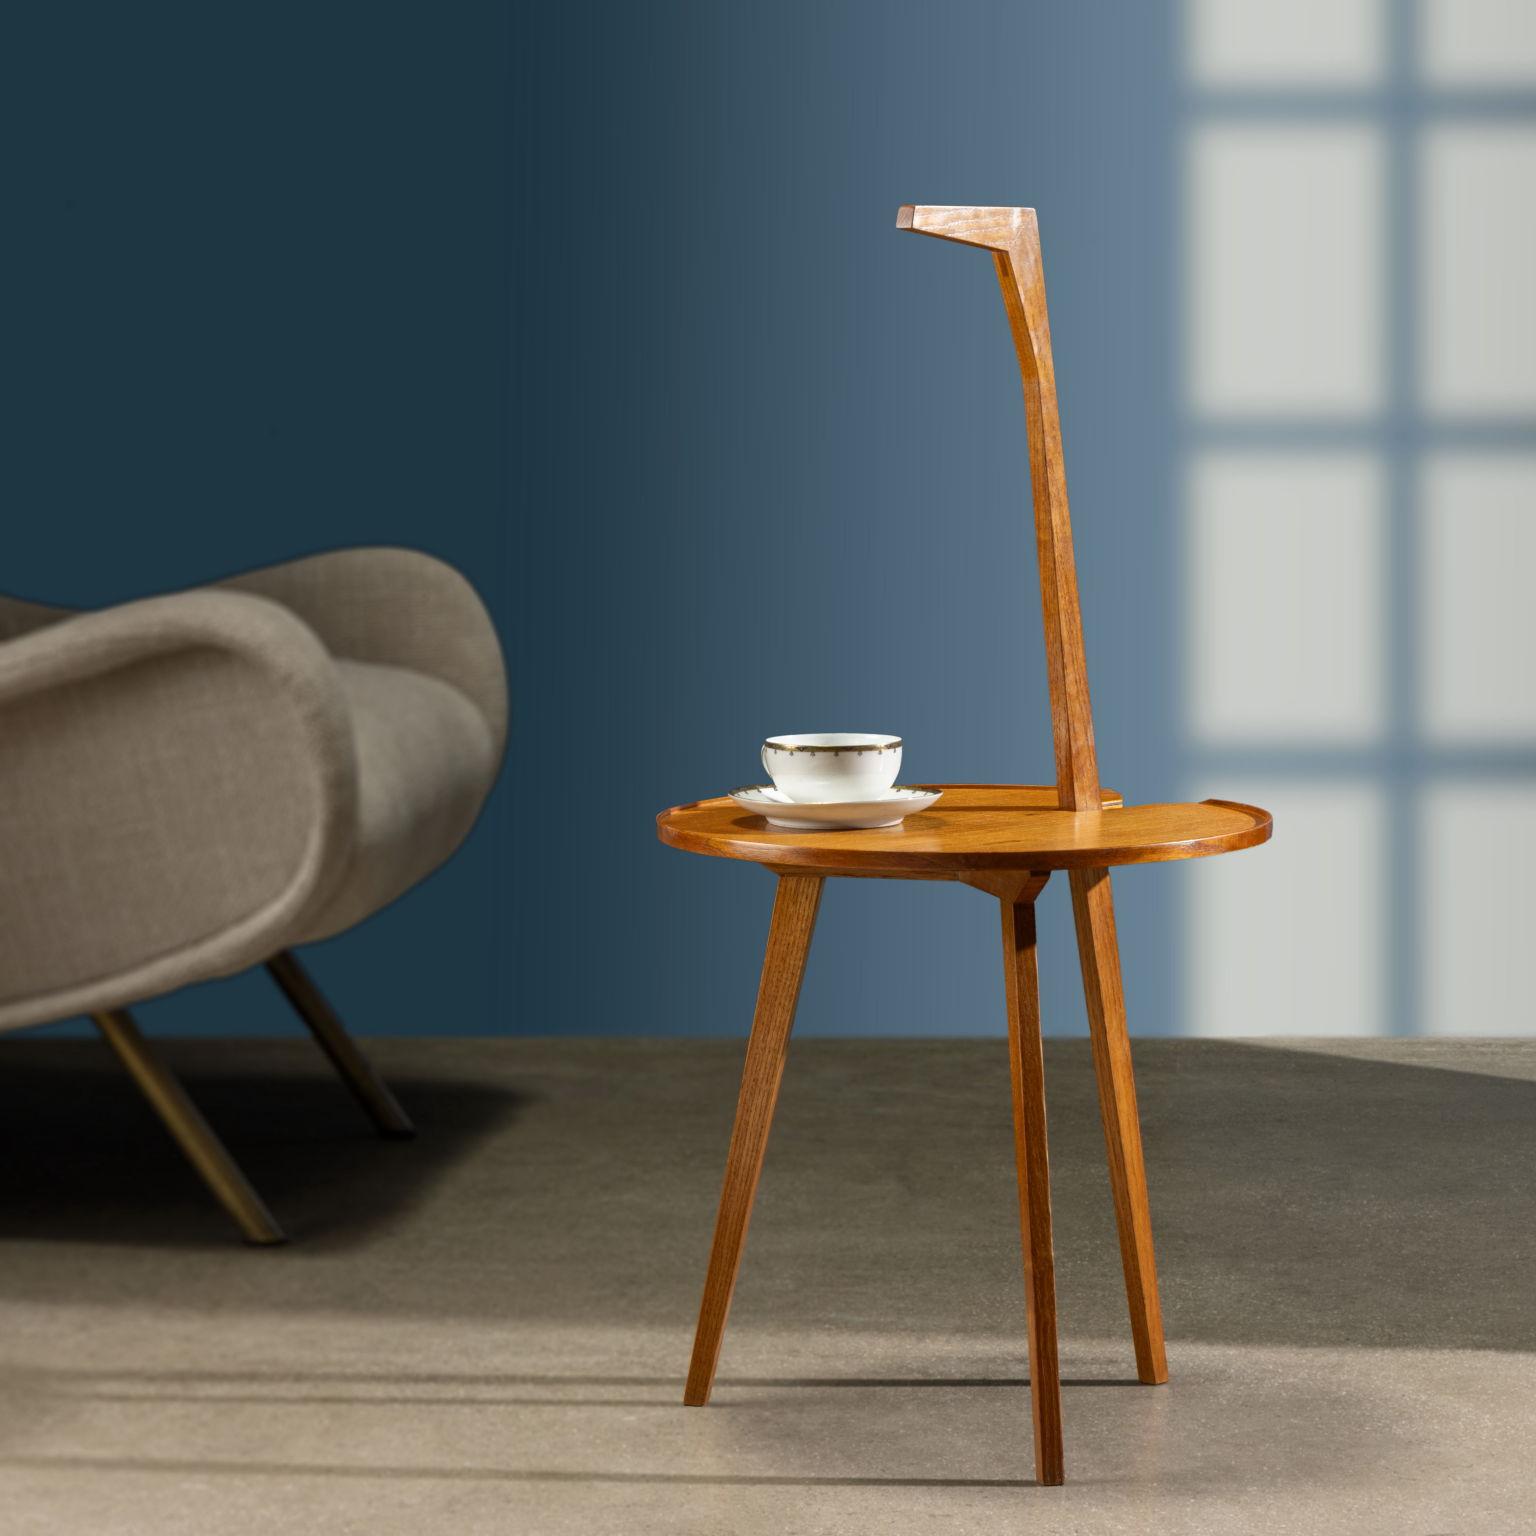 Iconico tavolino/servomuto modello 'Cicognino' disegnato da Franco Albini e prodotto a partire dagli anni '50 da Poggi. Una delle tre esili gambe si allunga per diventare “manico-becco”, rendendo agevole il trasporto dell'oggetto. Il piano di